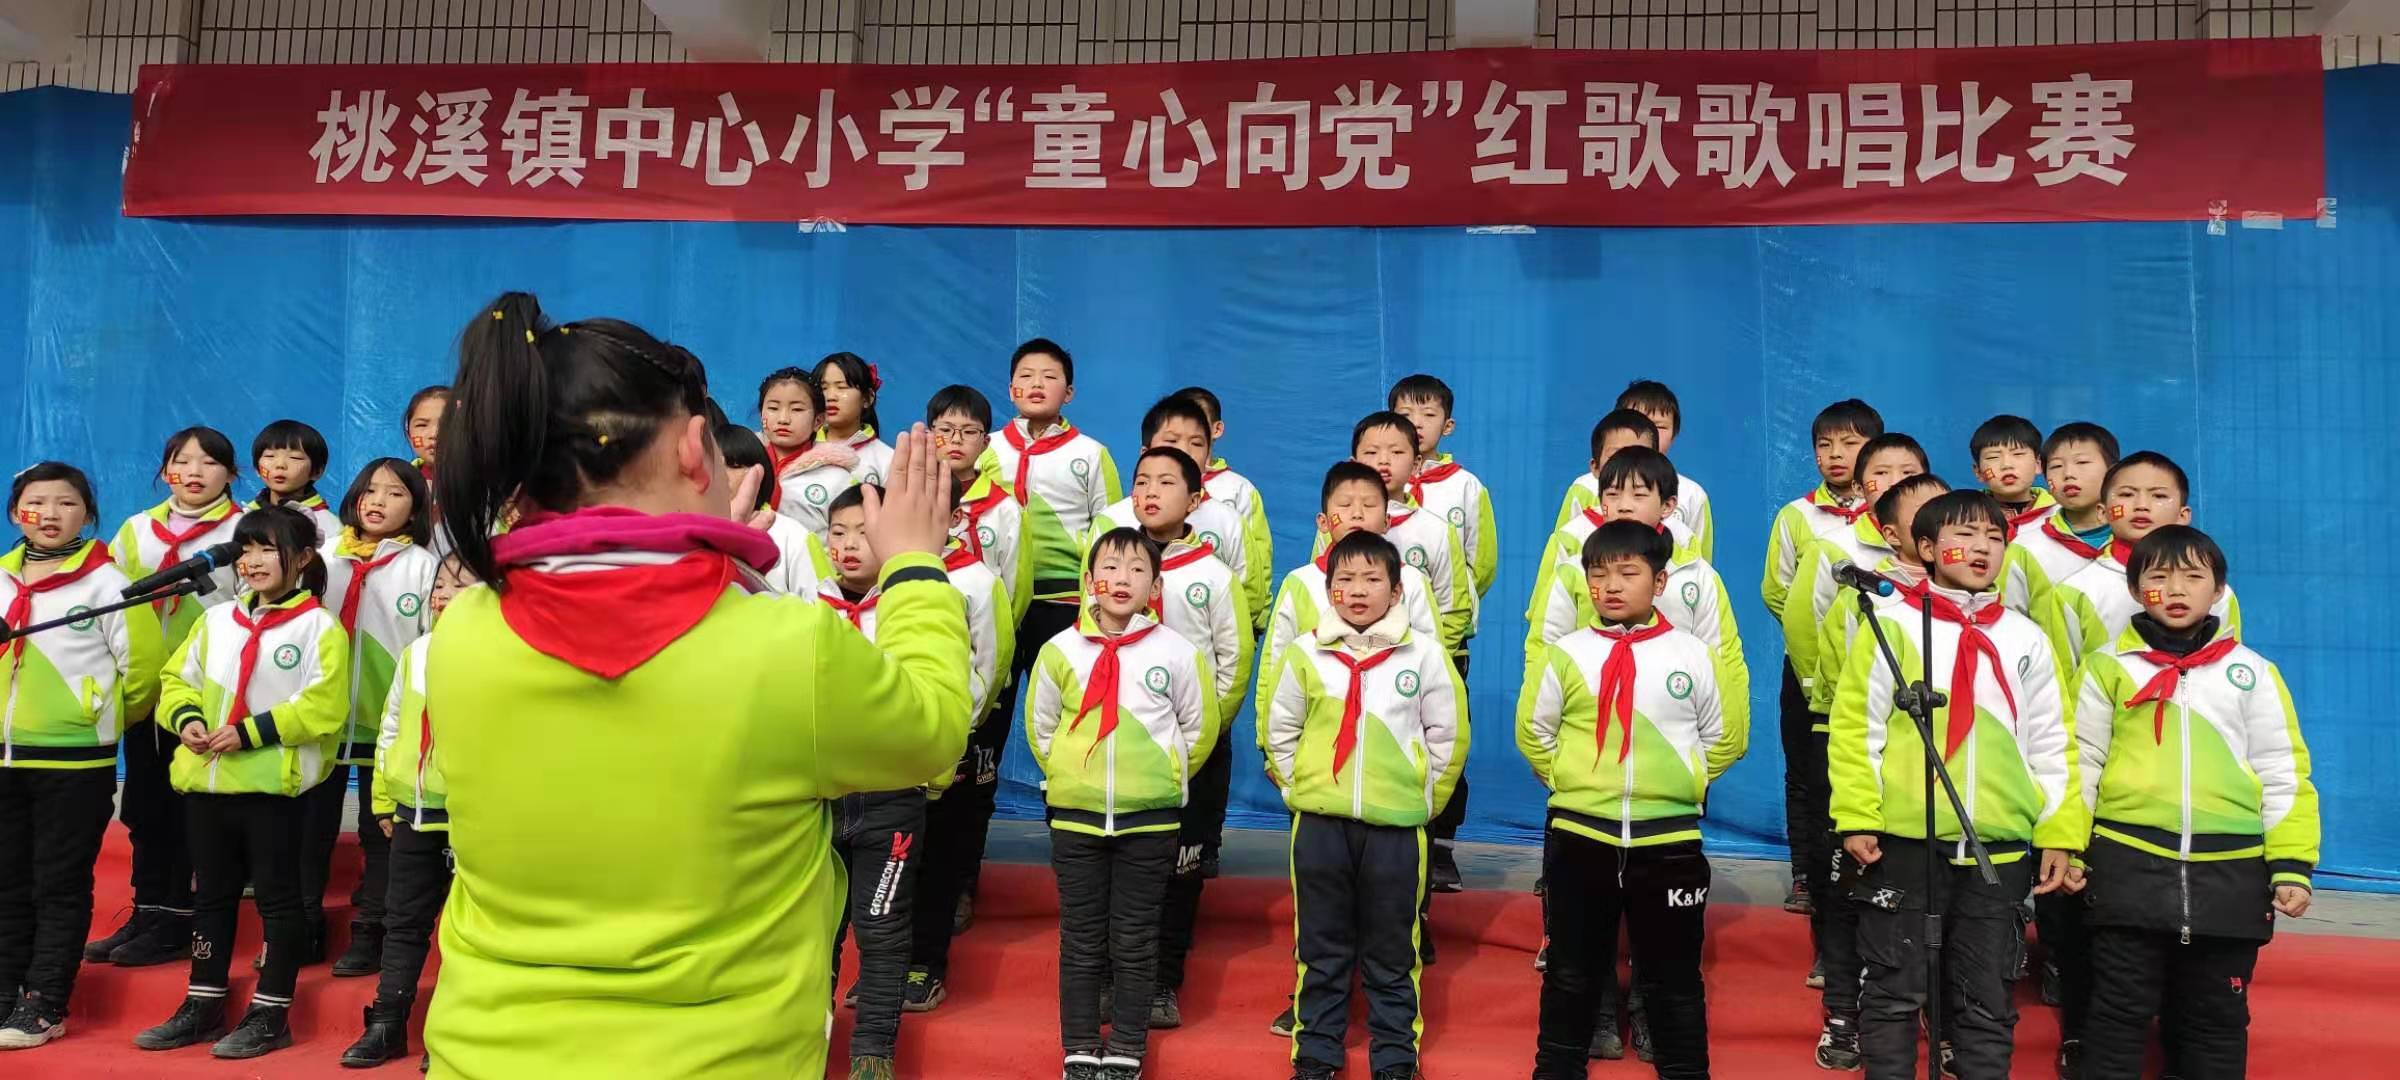 桃溪镇中心小学举行"童心向党"歌唱比赛